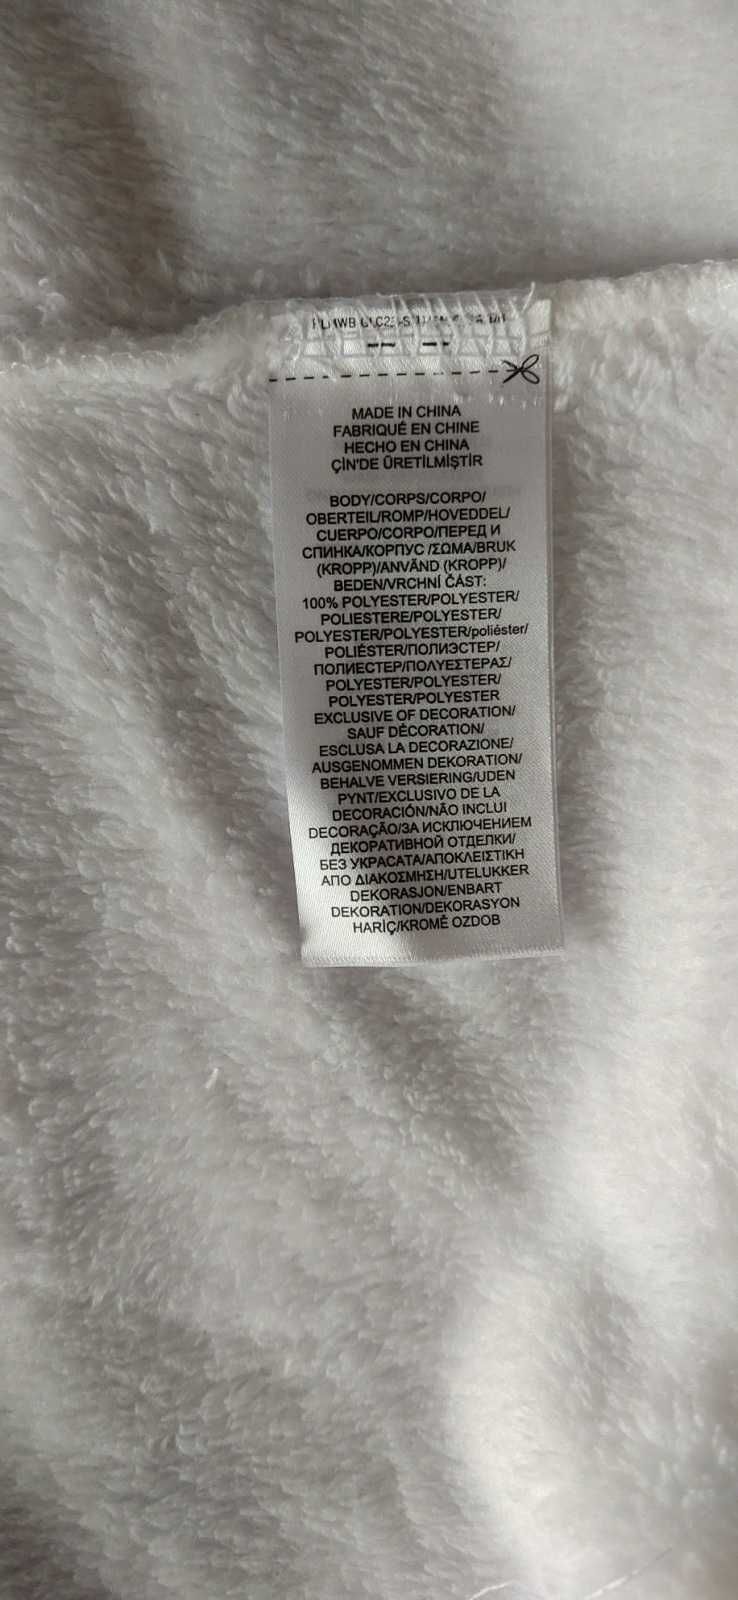 Новый Ralph Lauren Polo женский халат $89.50 белый size L 100%оригинал